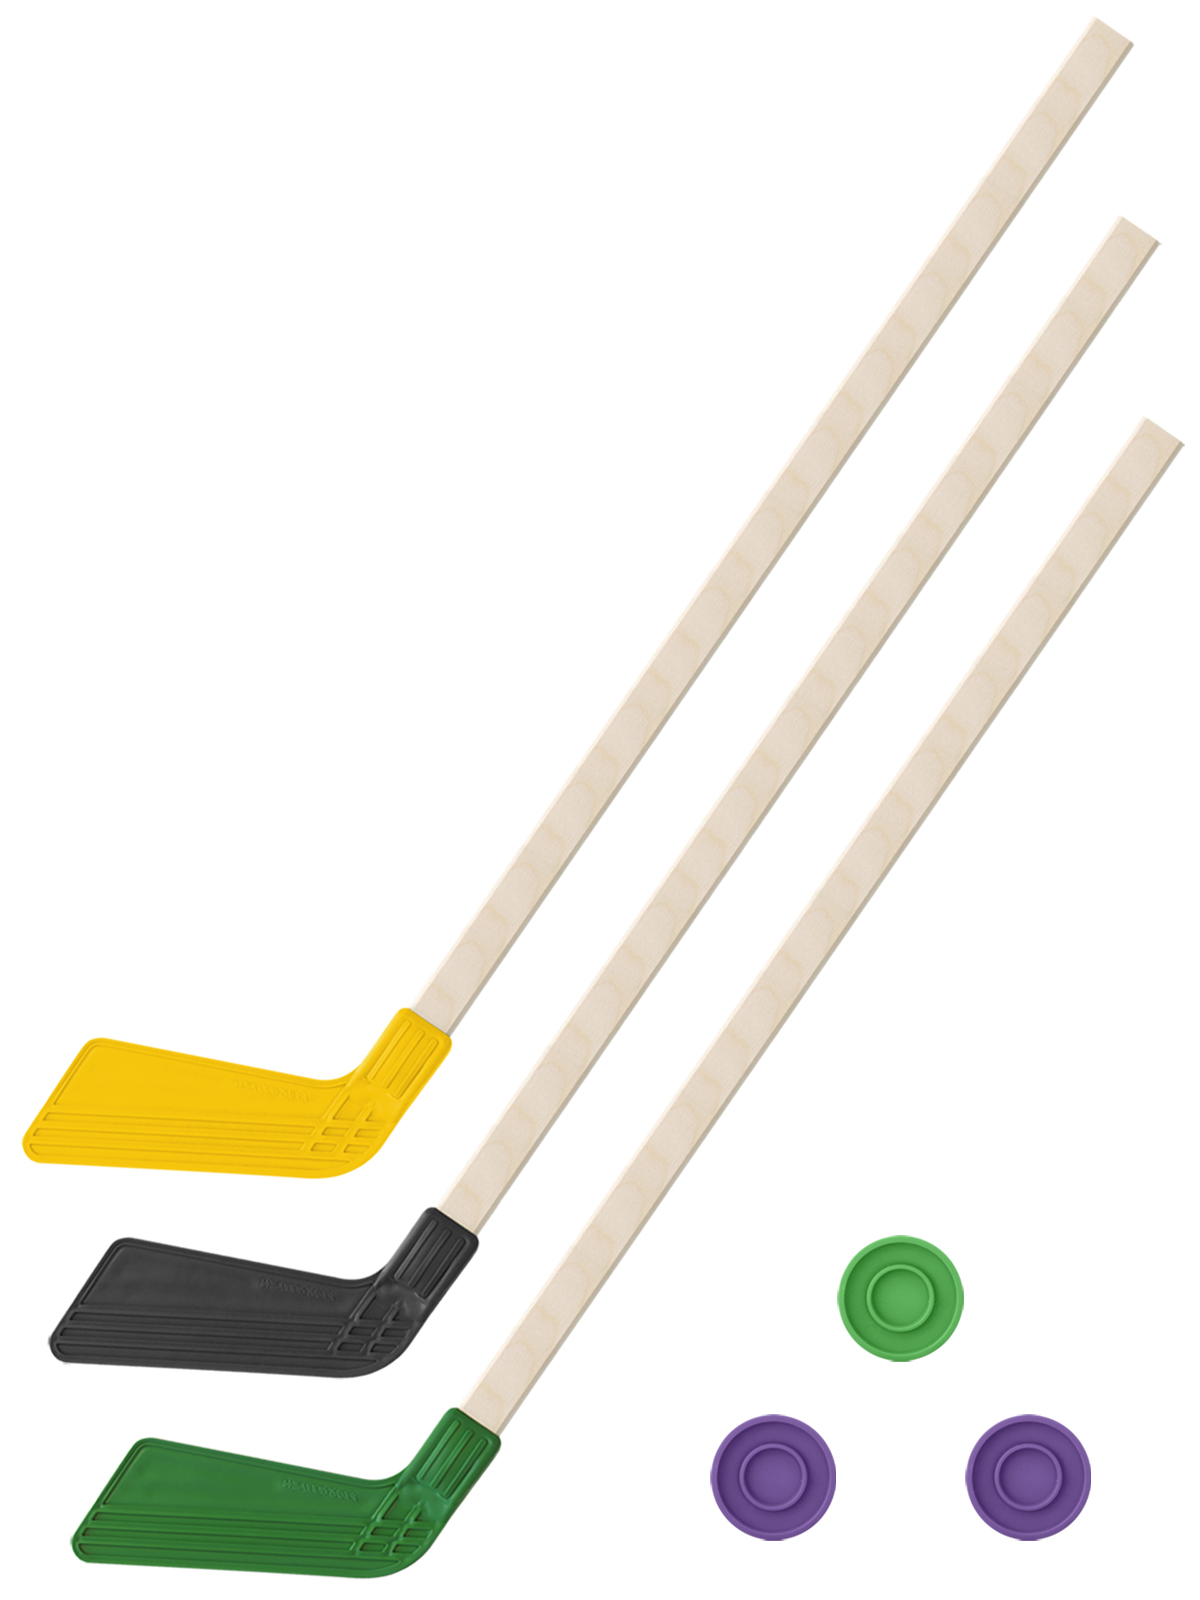 фото Детский хоккейный набор задира-плюс клюшки хоккейных 80 см желтая,черная,зеленая+3 шайбы